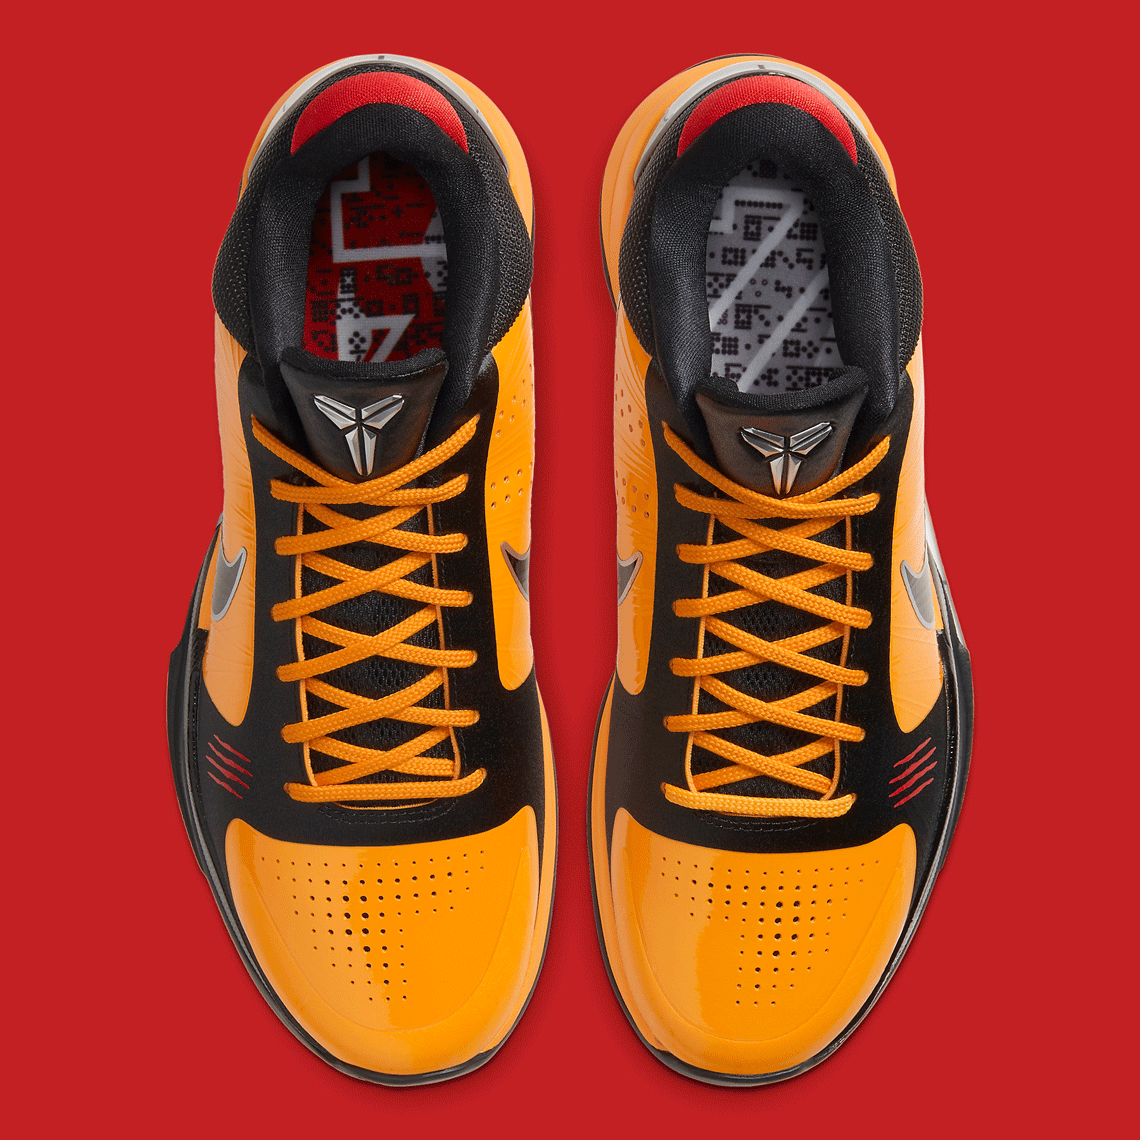 Nike Kobe 5 Protro Bruce Lee Cd4991 700 3 1